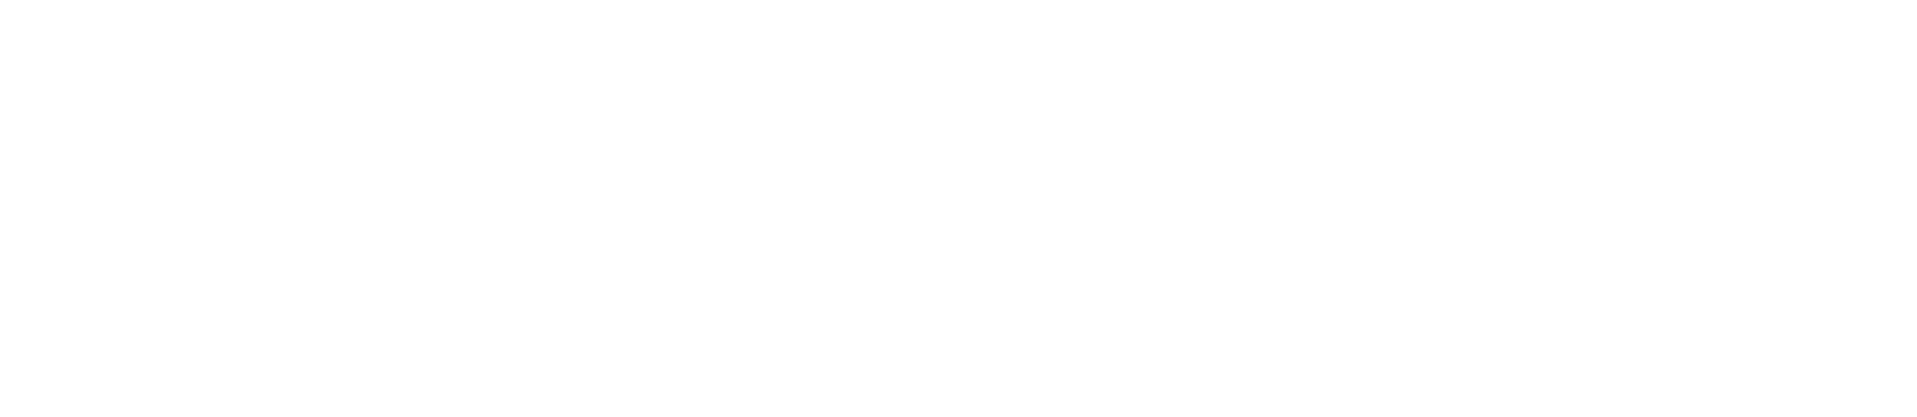 Belwood Homes - Weins Development Group